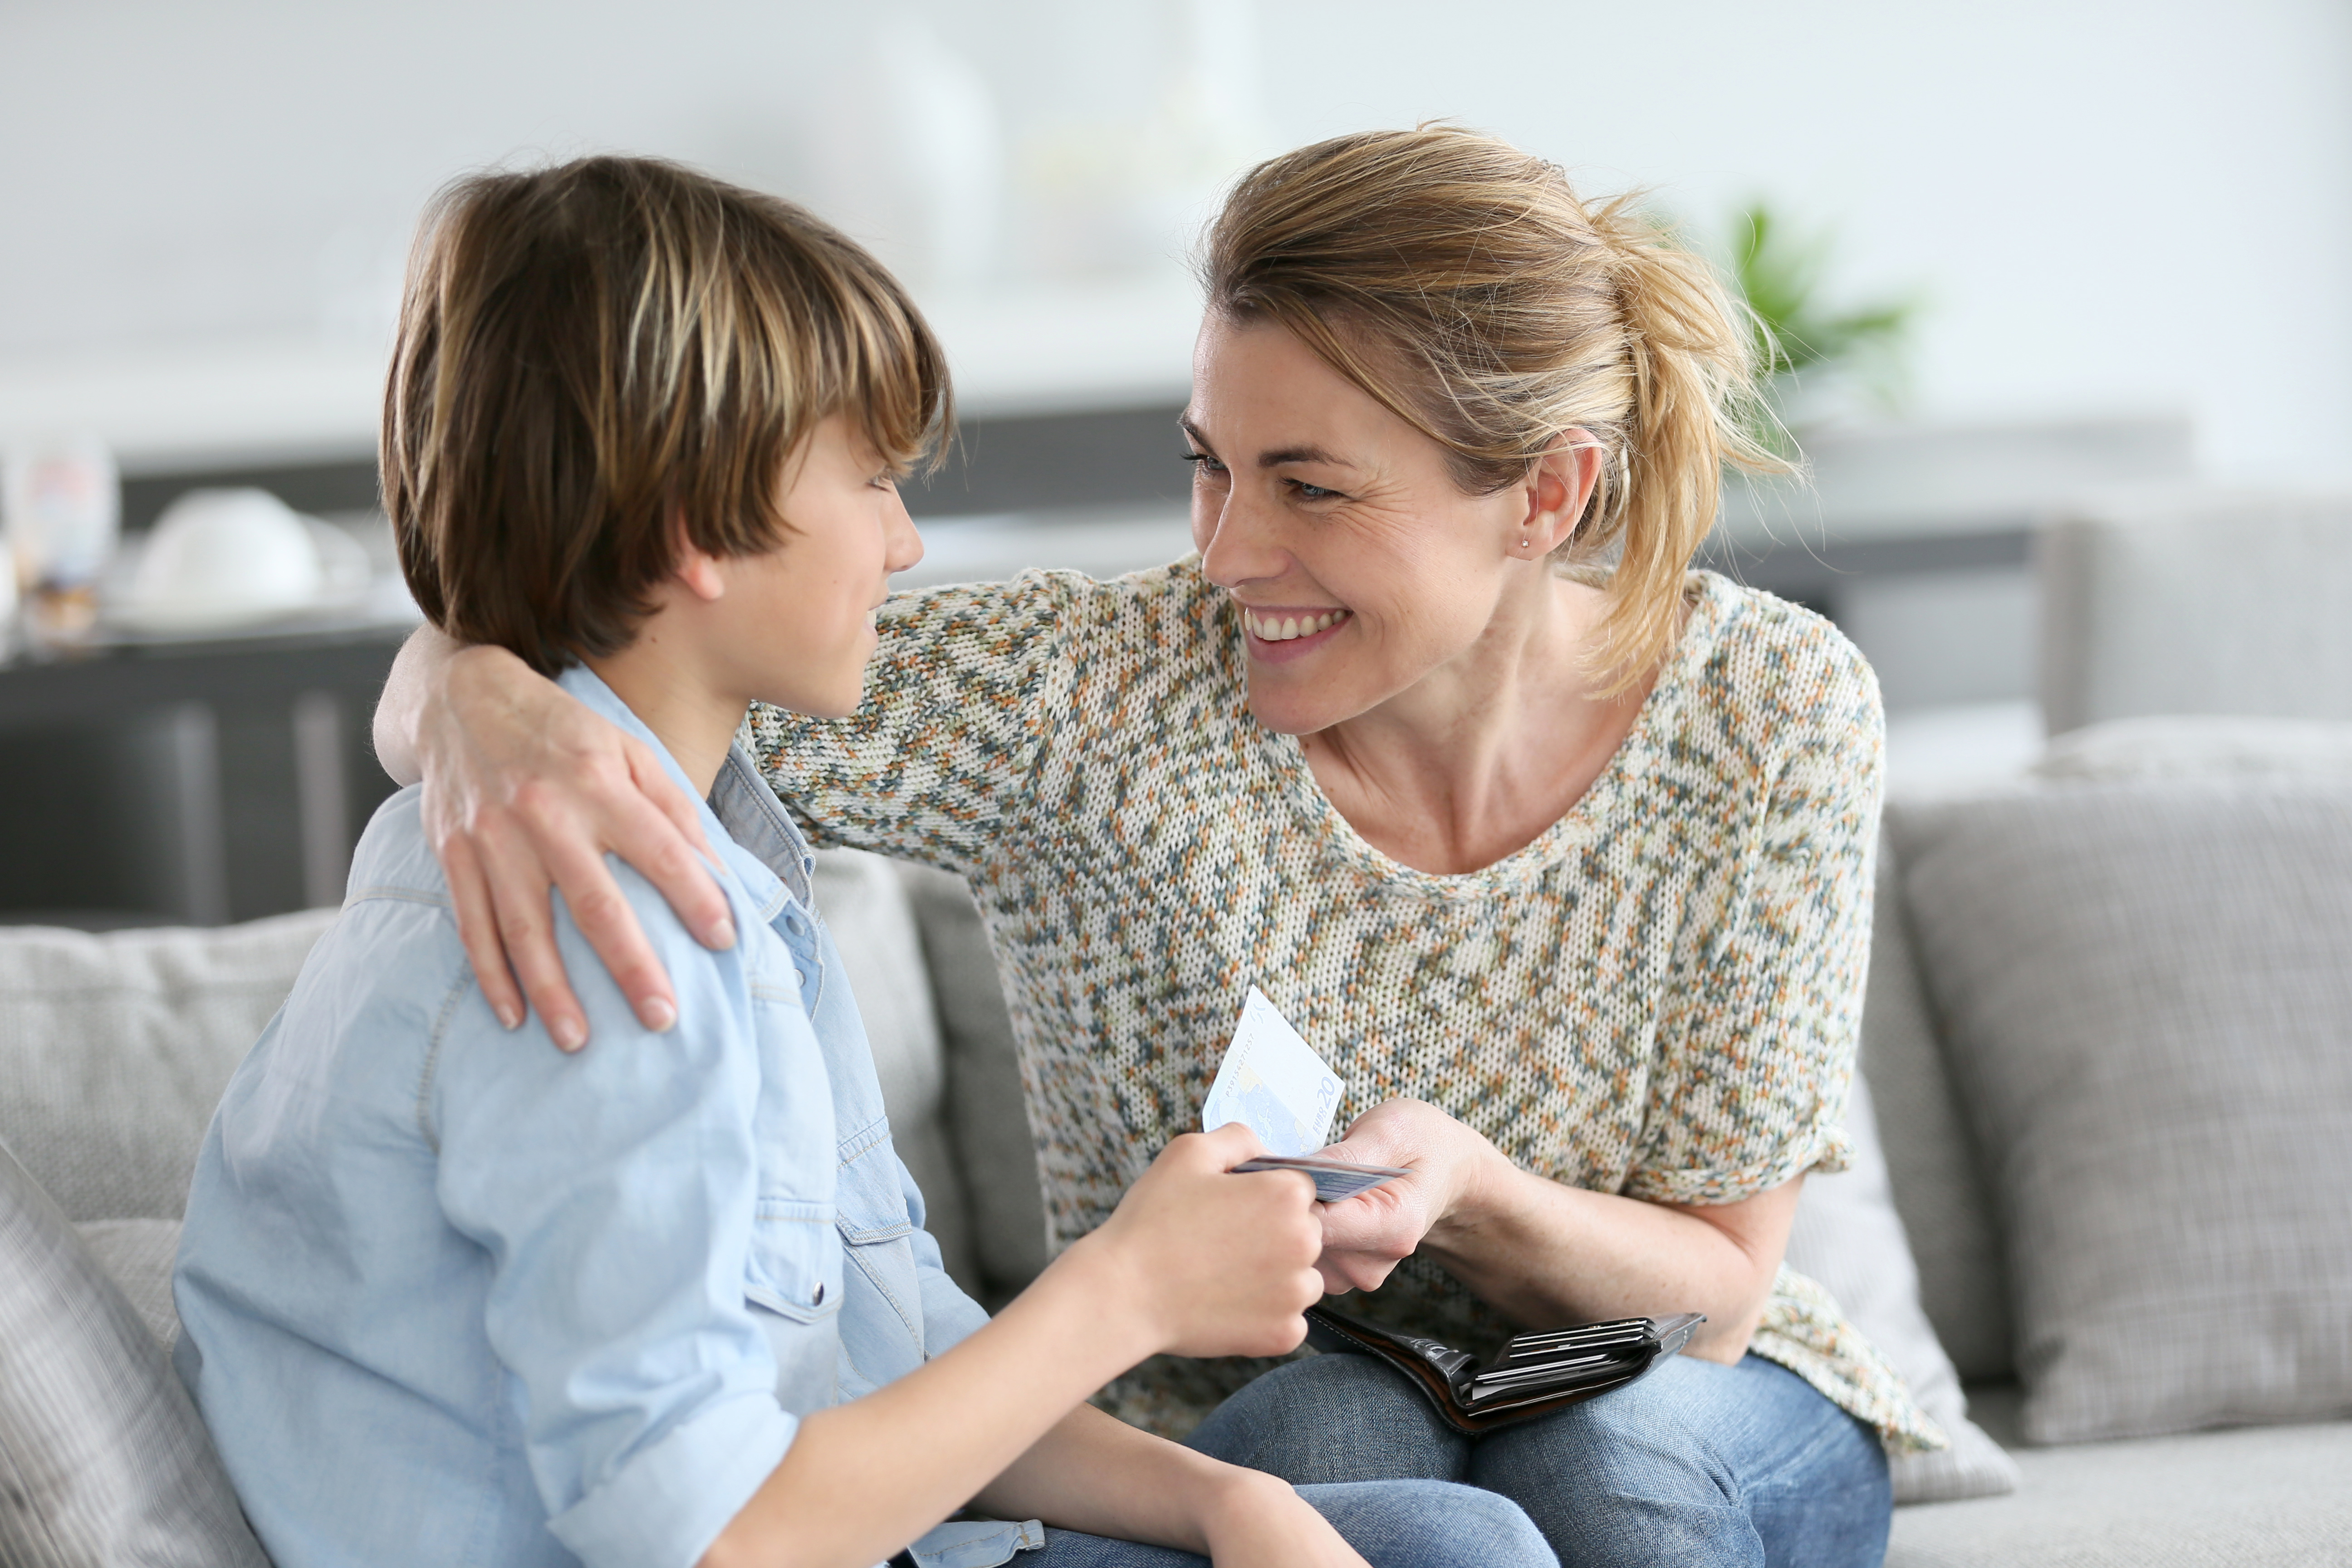 A mother giving her son an allowance | Source: Shutterstock